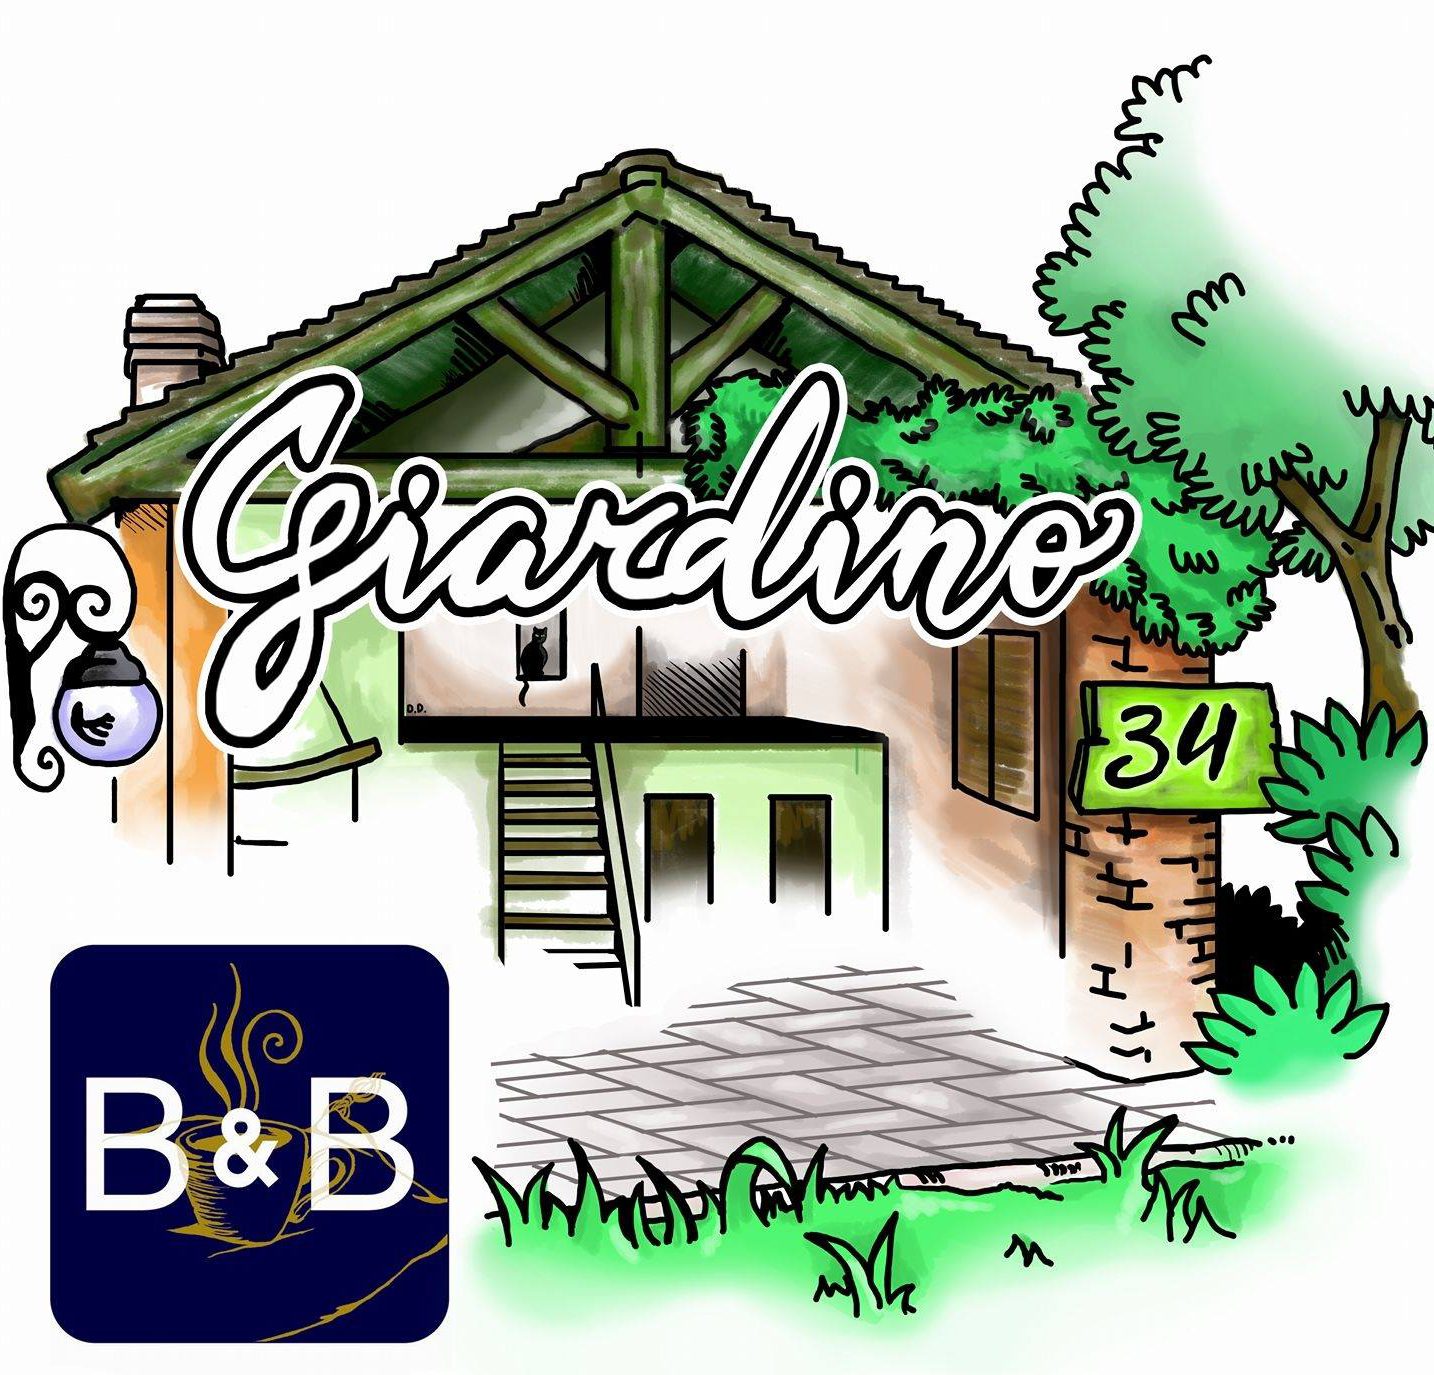 B&B Giardino 34 